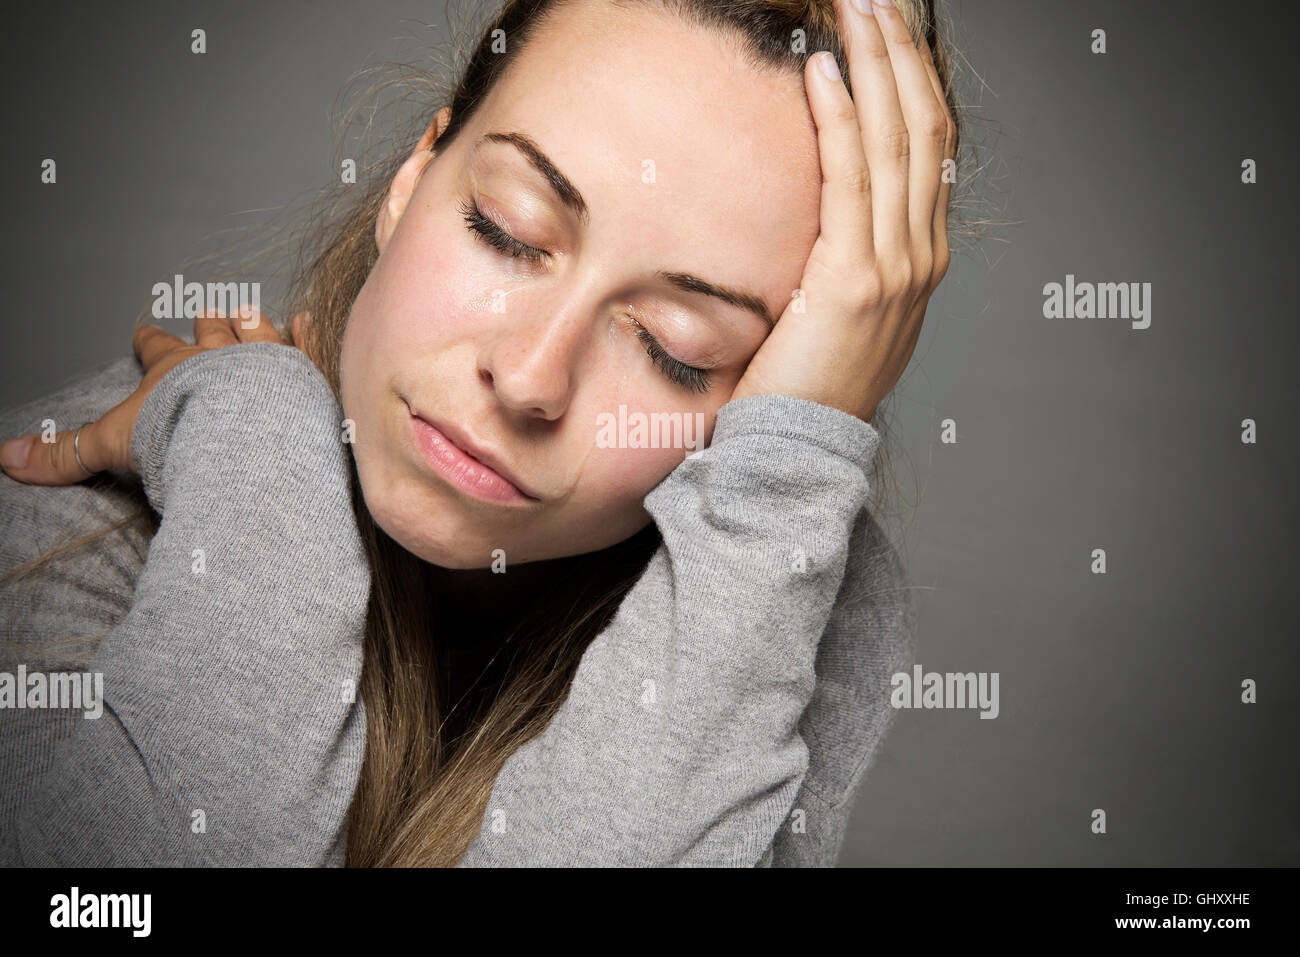 Traurige junge Frau mit Augen geschlossen Tränen rannen aufgedeckte nahe Blatt am Kopf Traurigkeit Konzept Stockfoto